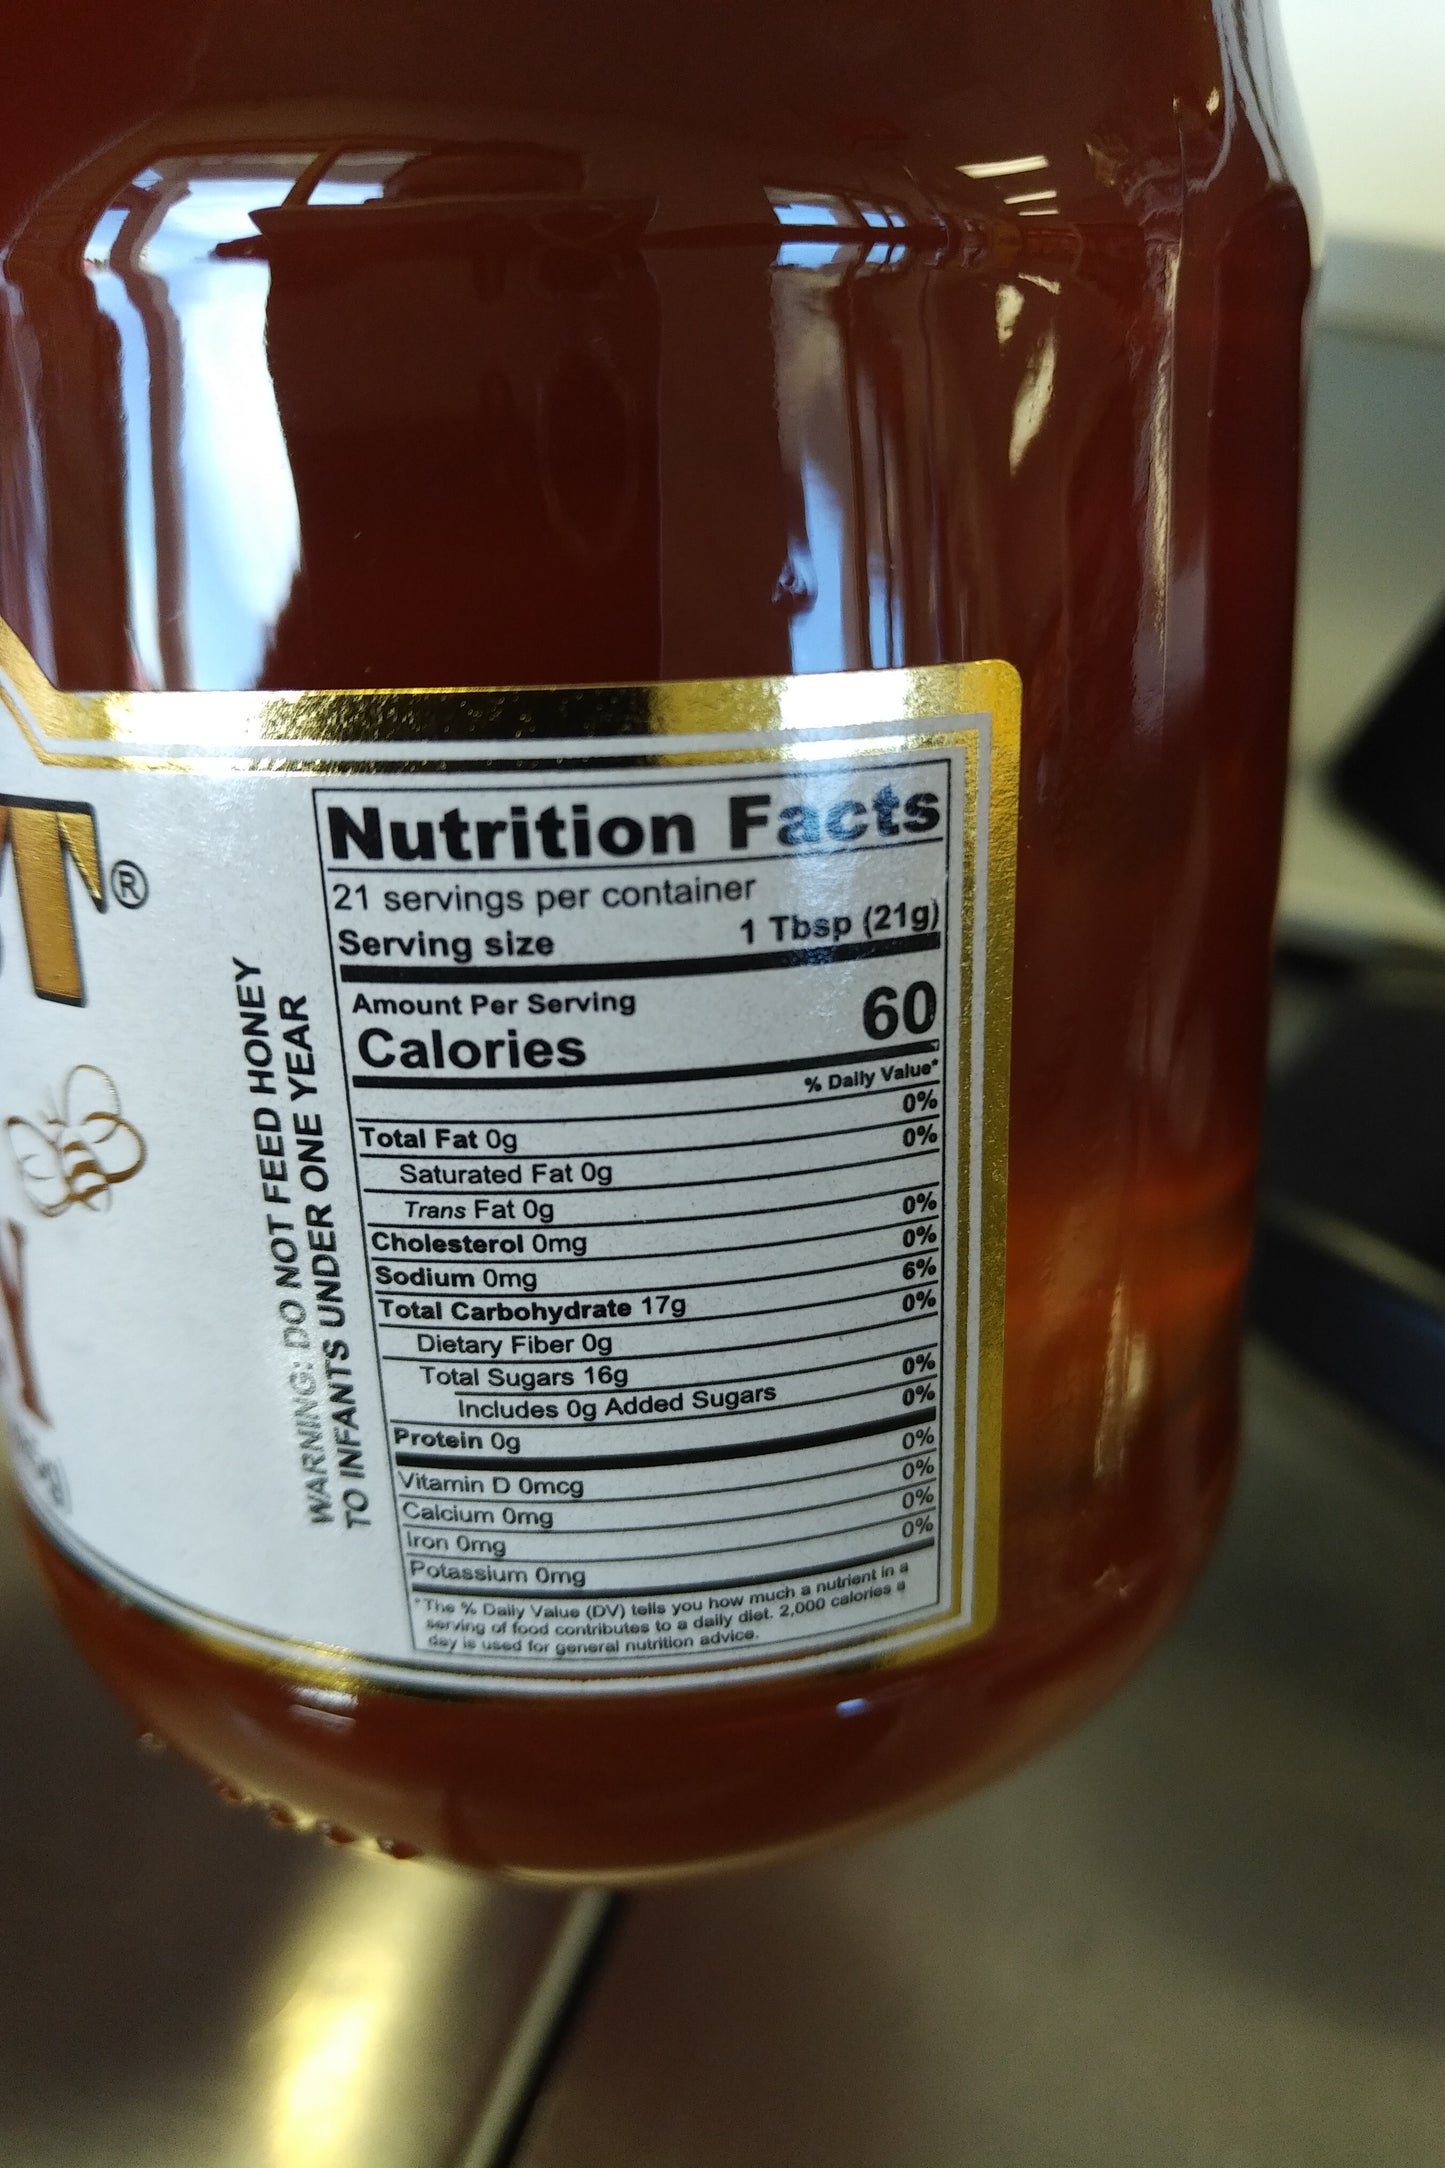 Midleast 100% Pure Honey 16.4oz